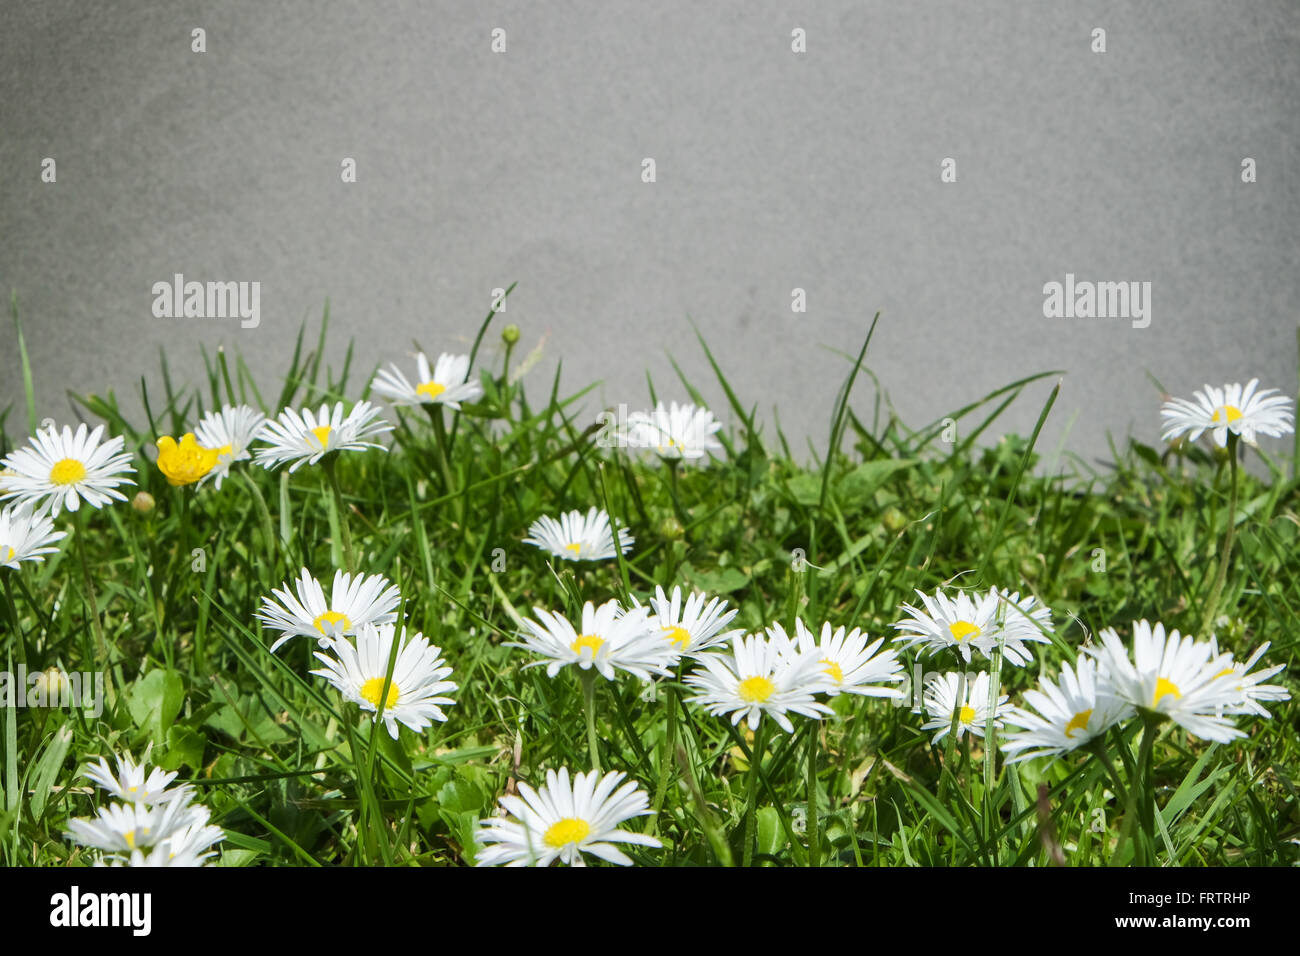 Viele Bellis Perennis - Gänseblümchen Commom - stehen in einer Wiese vor einer grauen Wand Stockfoto